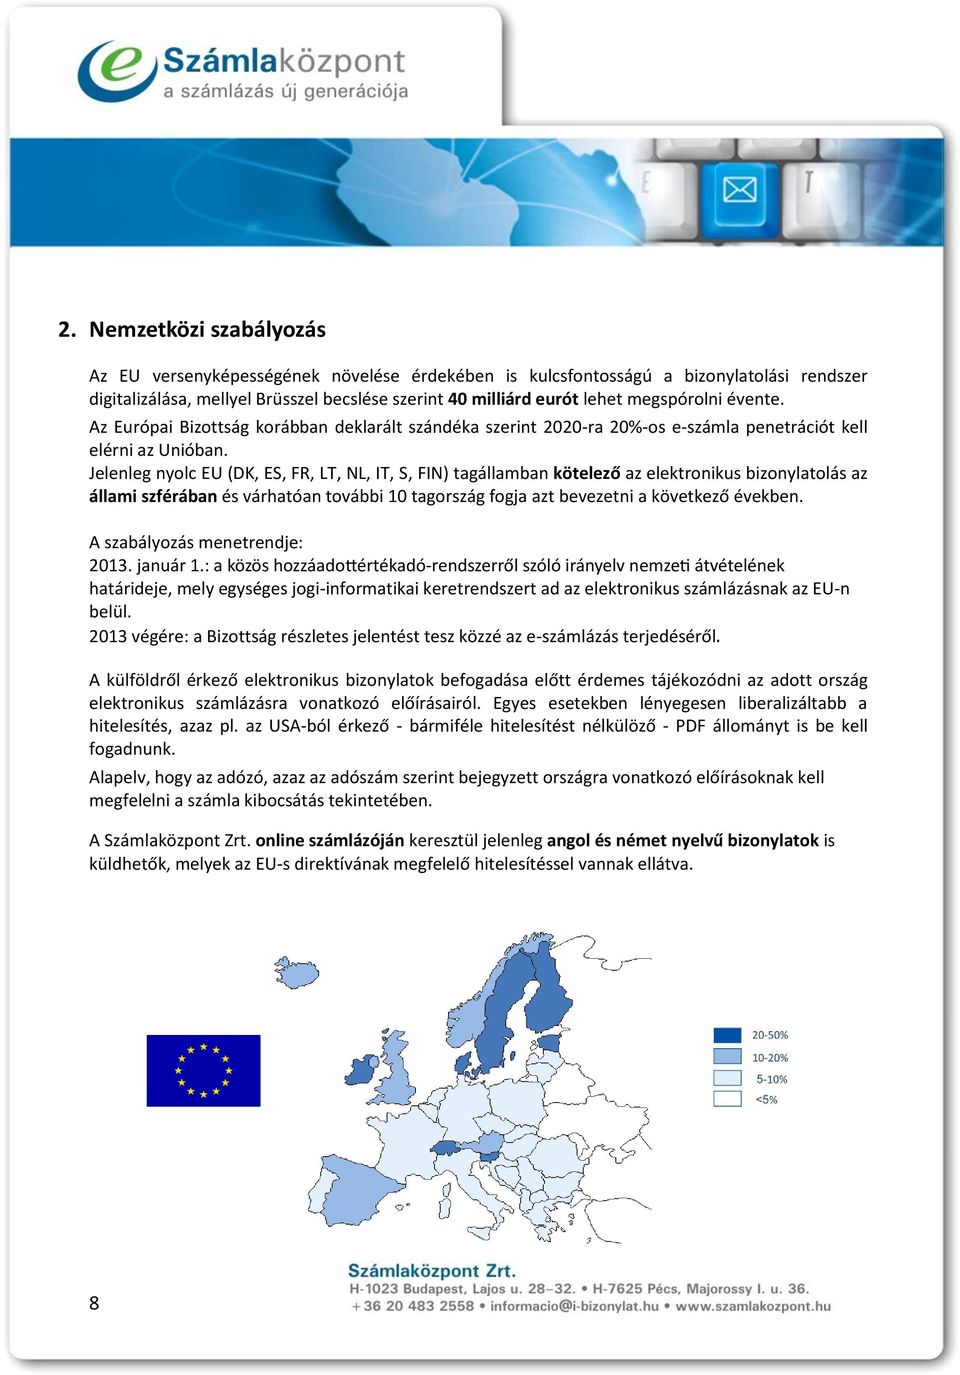 Jelenleg nyolc EU (DK, ES, FR, LT, NL, IT, S, FIN) tagállamban kötelező az elektronikus bizonylatolás az állami szférában és várhatóan további 10 tagország fogja azt bevezetni a következő években.